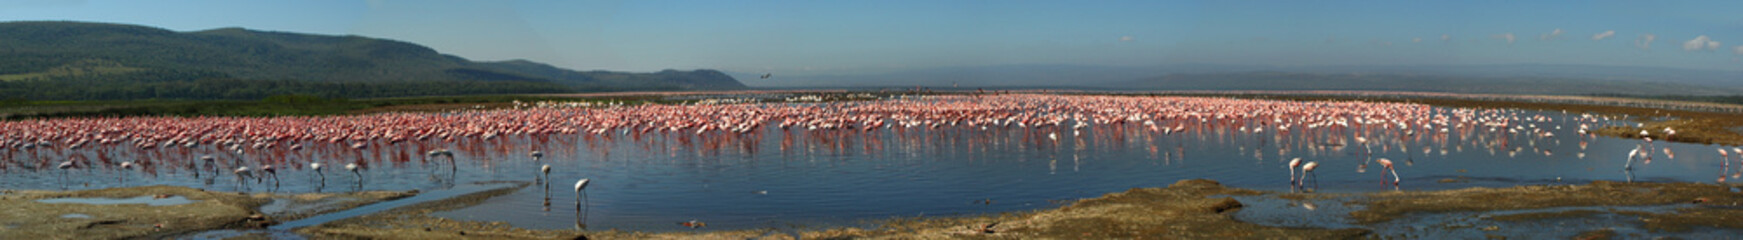 Lesser Flamingo, Kenya, Lake Nakuru